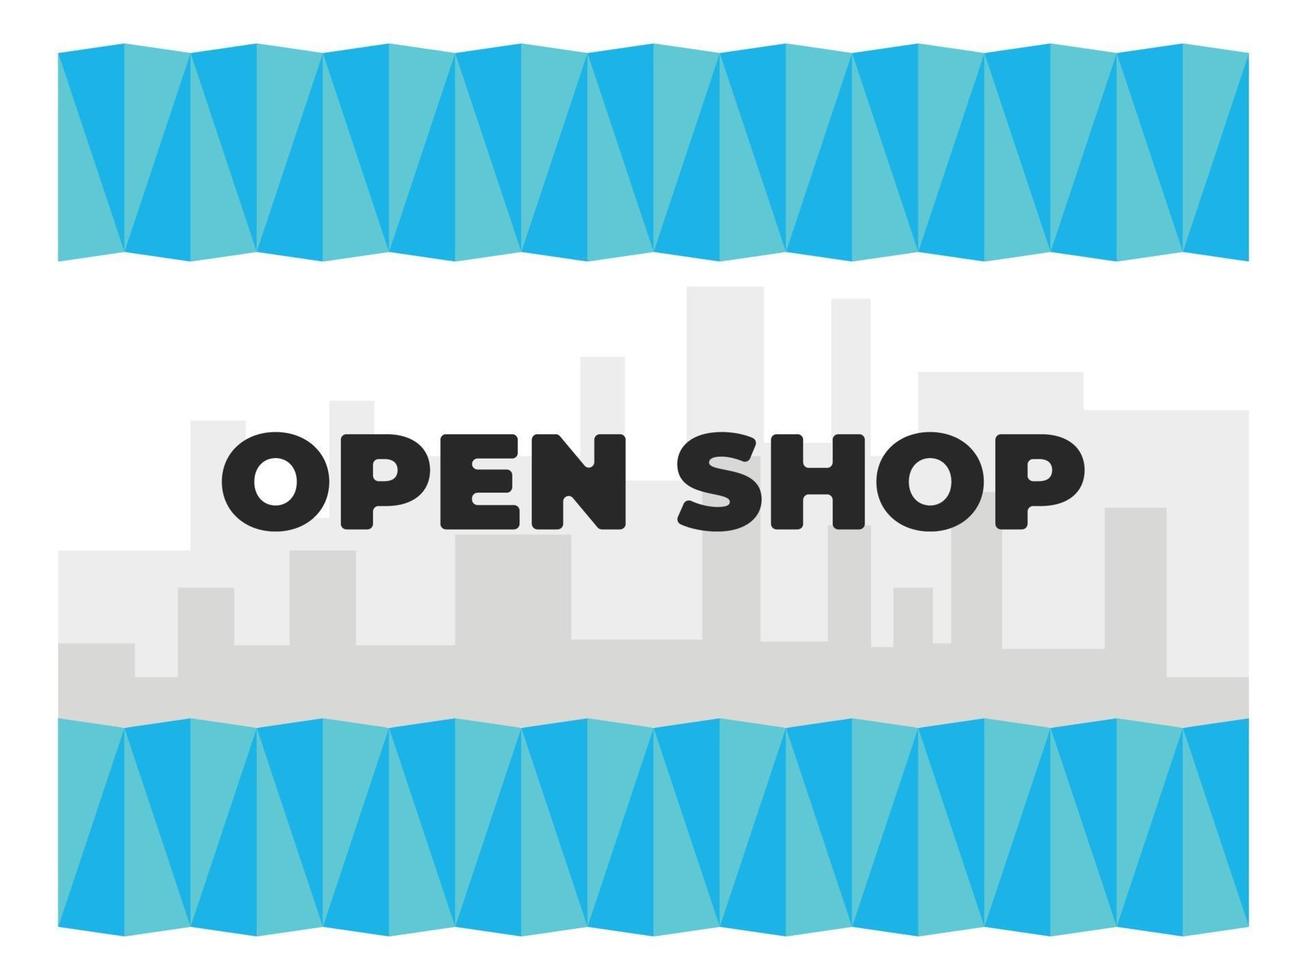 modelo de design de loja aberta, abra agora, venda aberta, loja e mercado vetor